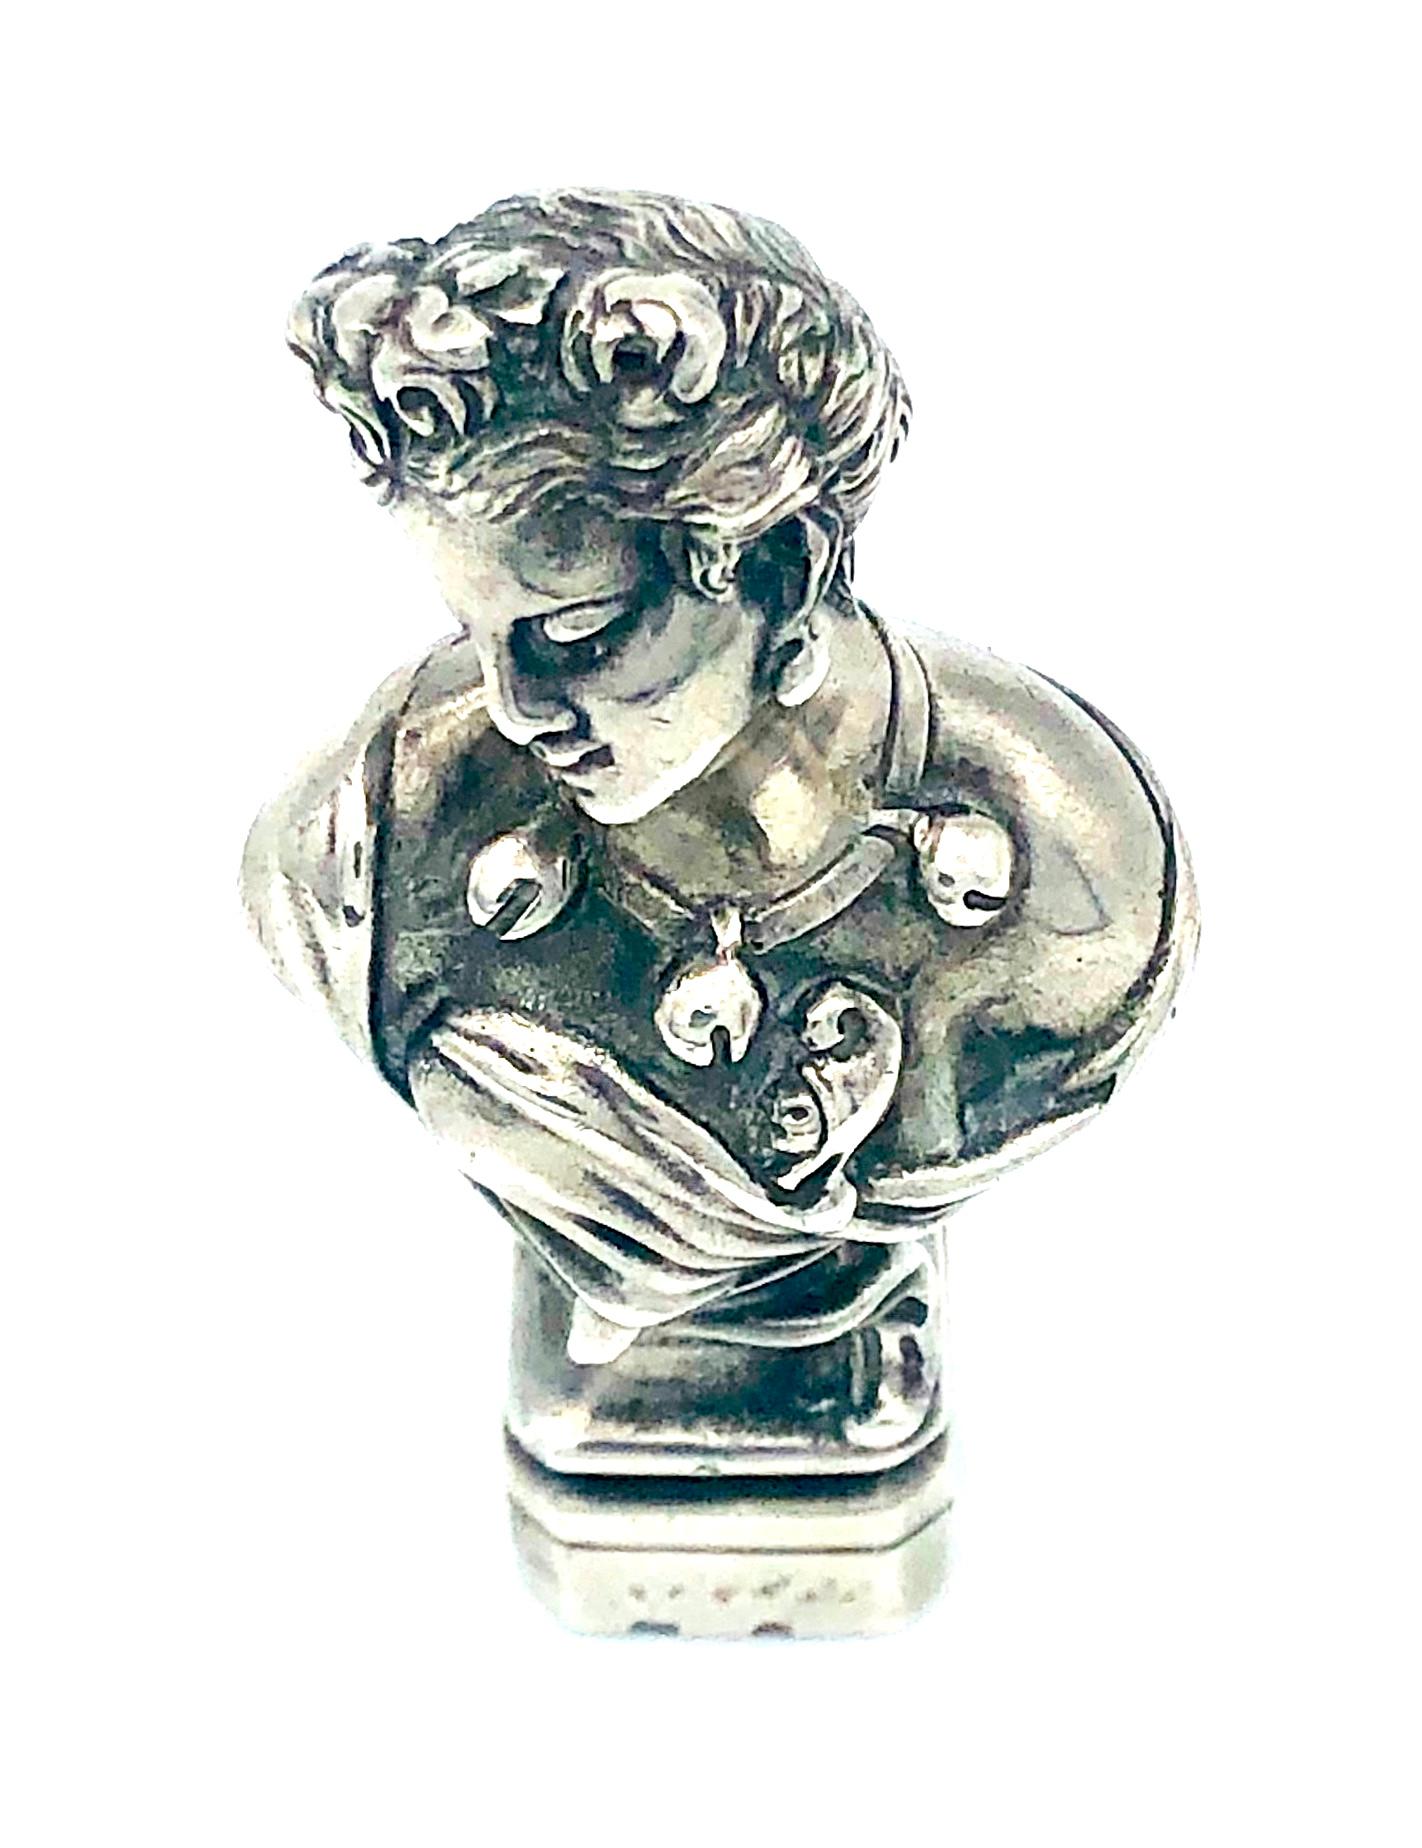 Ce sceau de bureau inhabituel a la forme d'une belle dame yong portant des roses dans sa coiffure relevée. Elle est vêtue d'une robe décolletée et porte un important collier. 